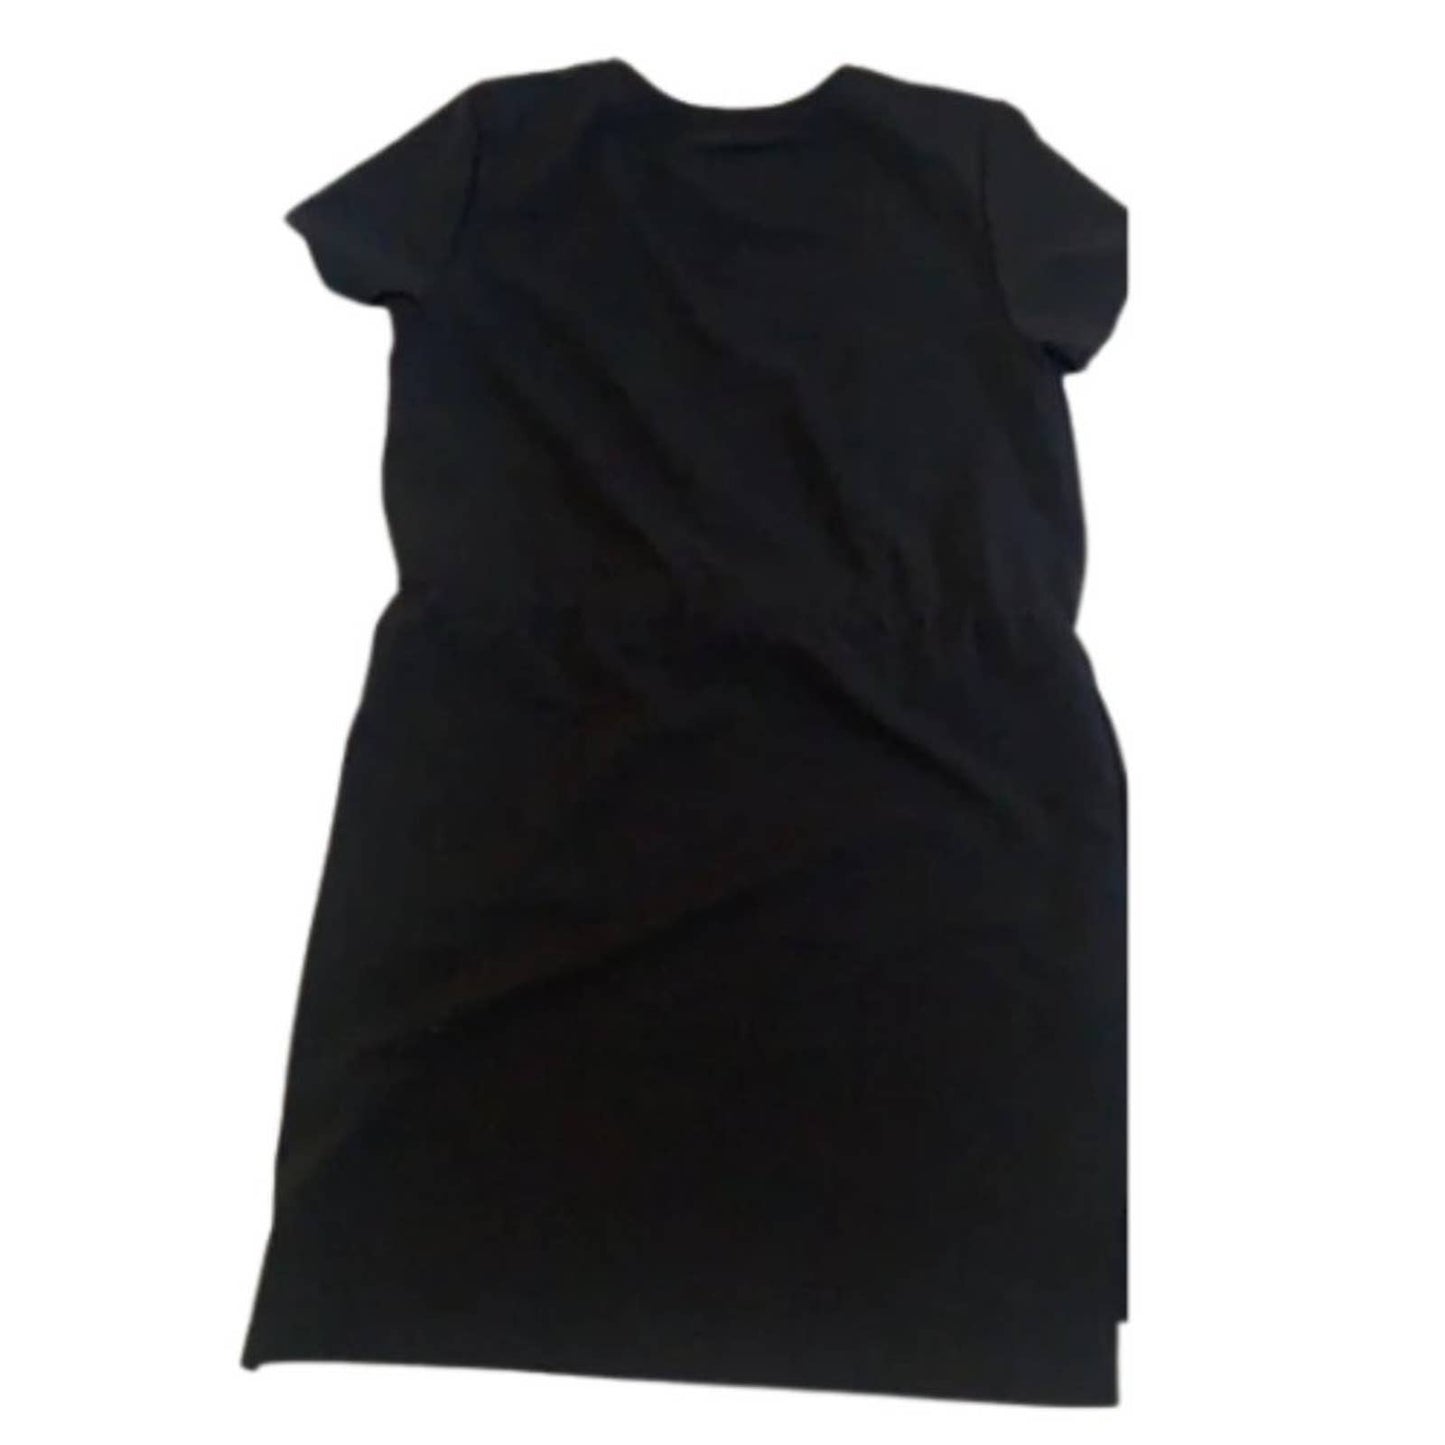 Terez Bridget Toggle Waist Mini Dress in Black EUC Small